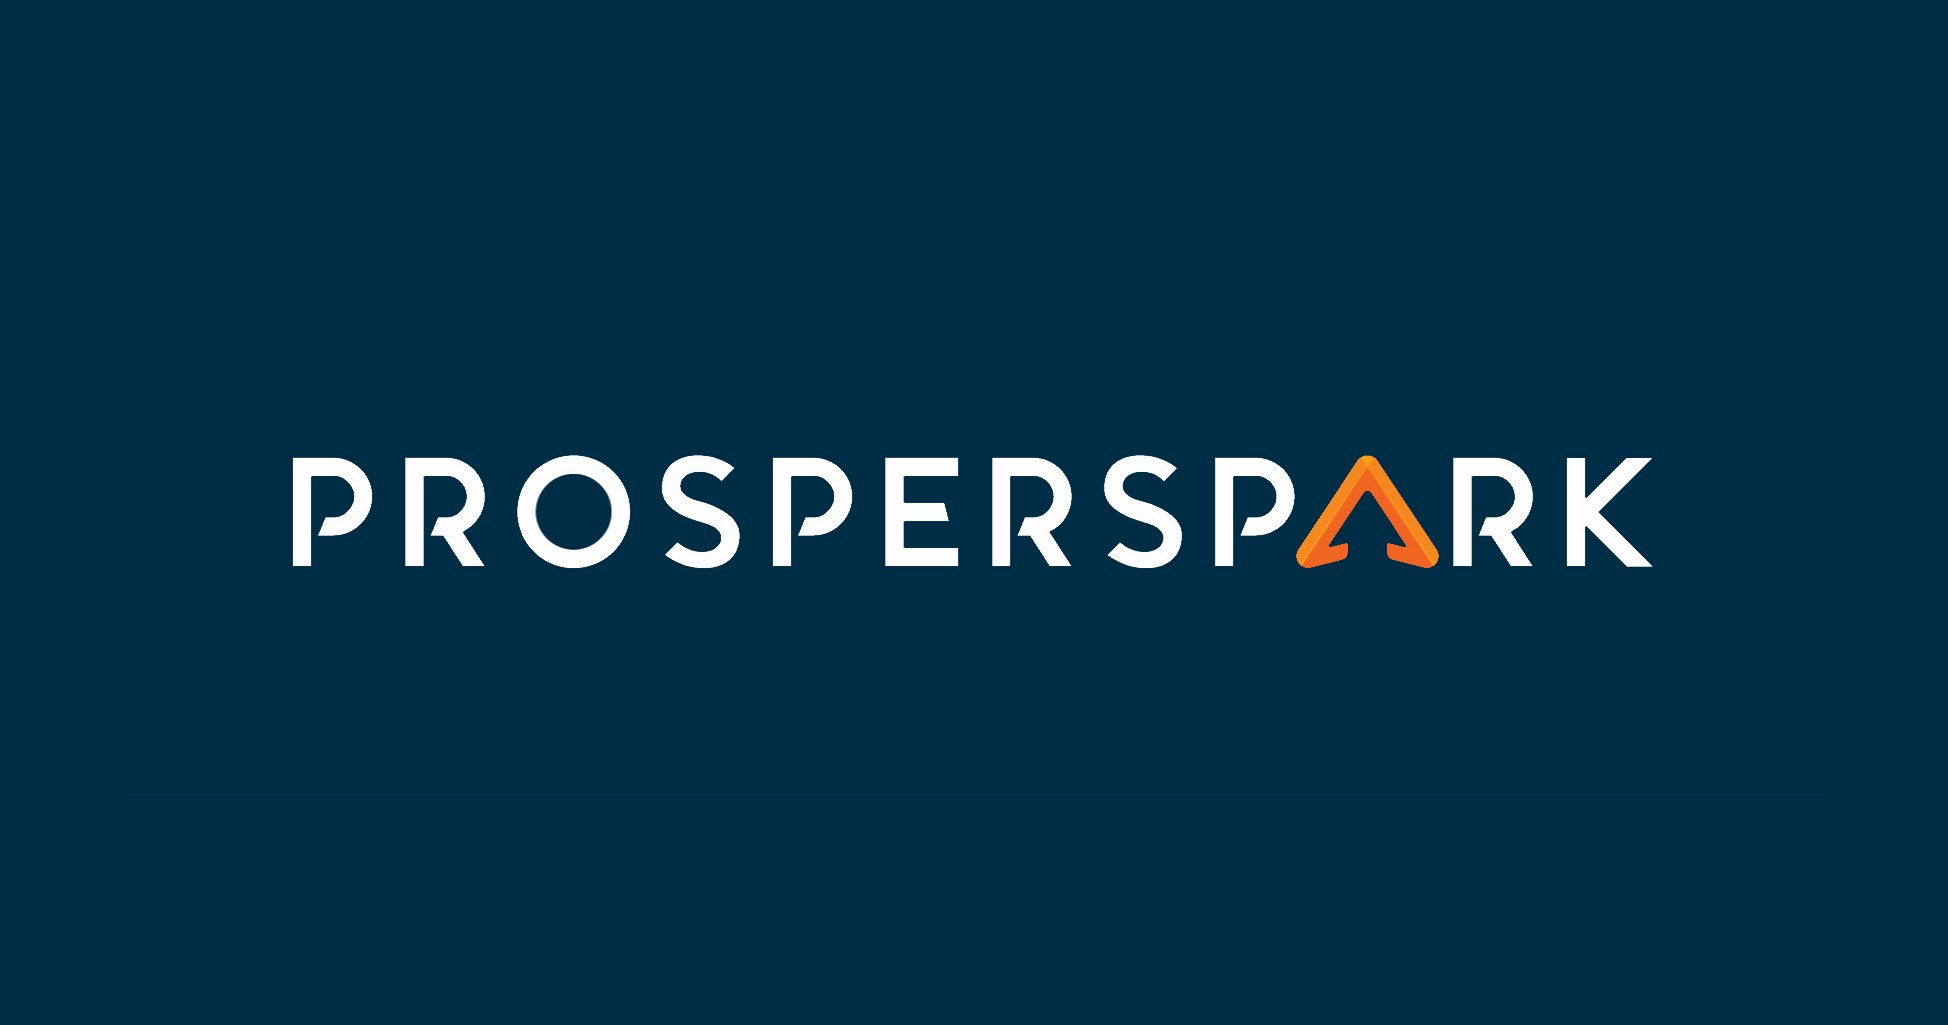 (c) Prosperspark.com